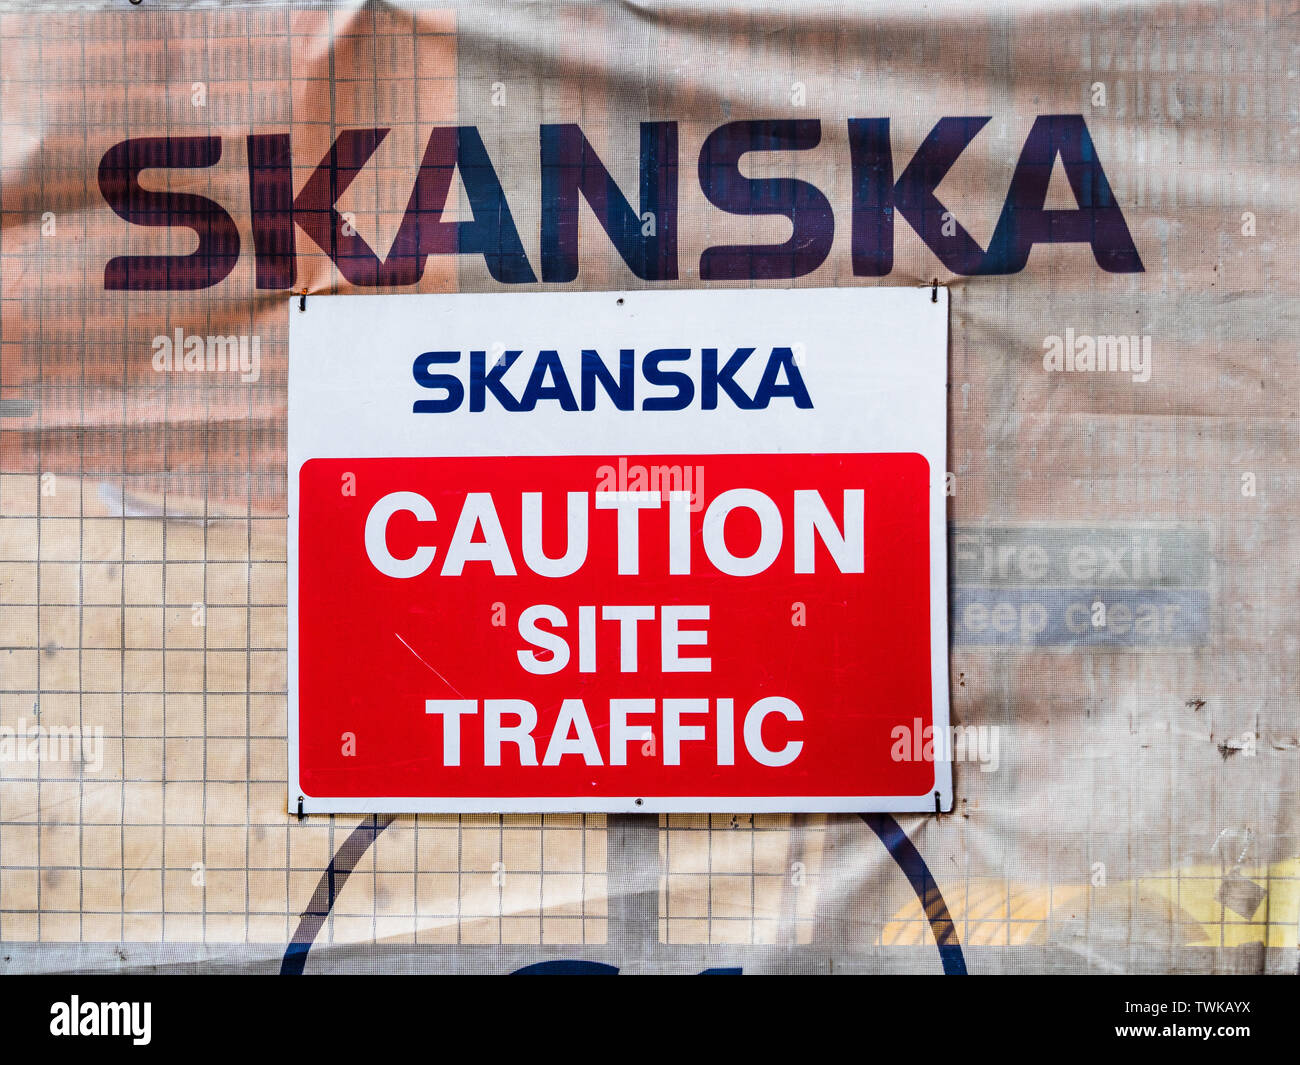 Des panneaux de chantier Construction Skanska - Skanska est une multinationale suédoise de construction et de développement - Mondes 5ème plus grande entreprise de construction Banque D'Images